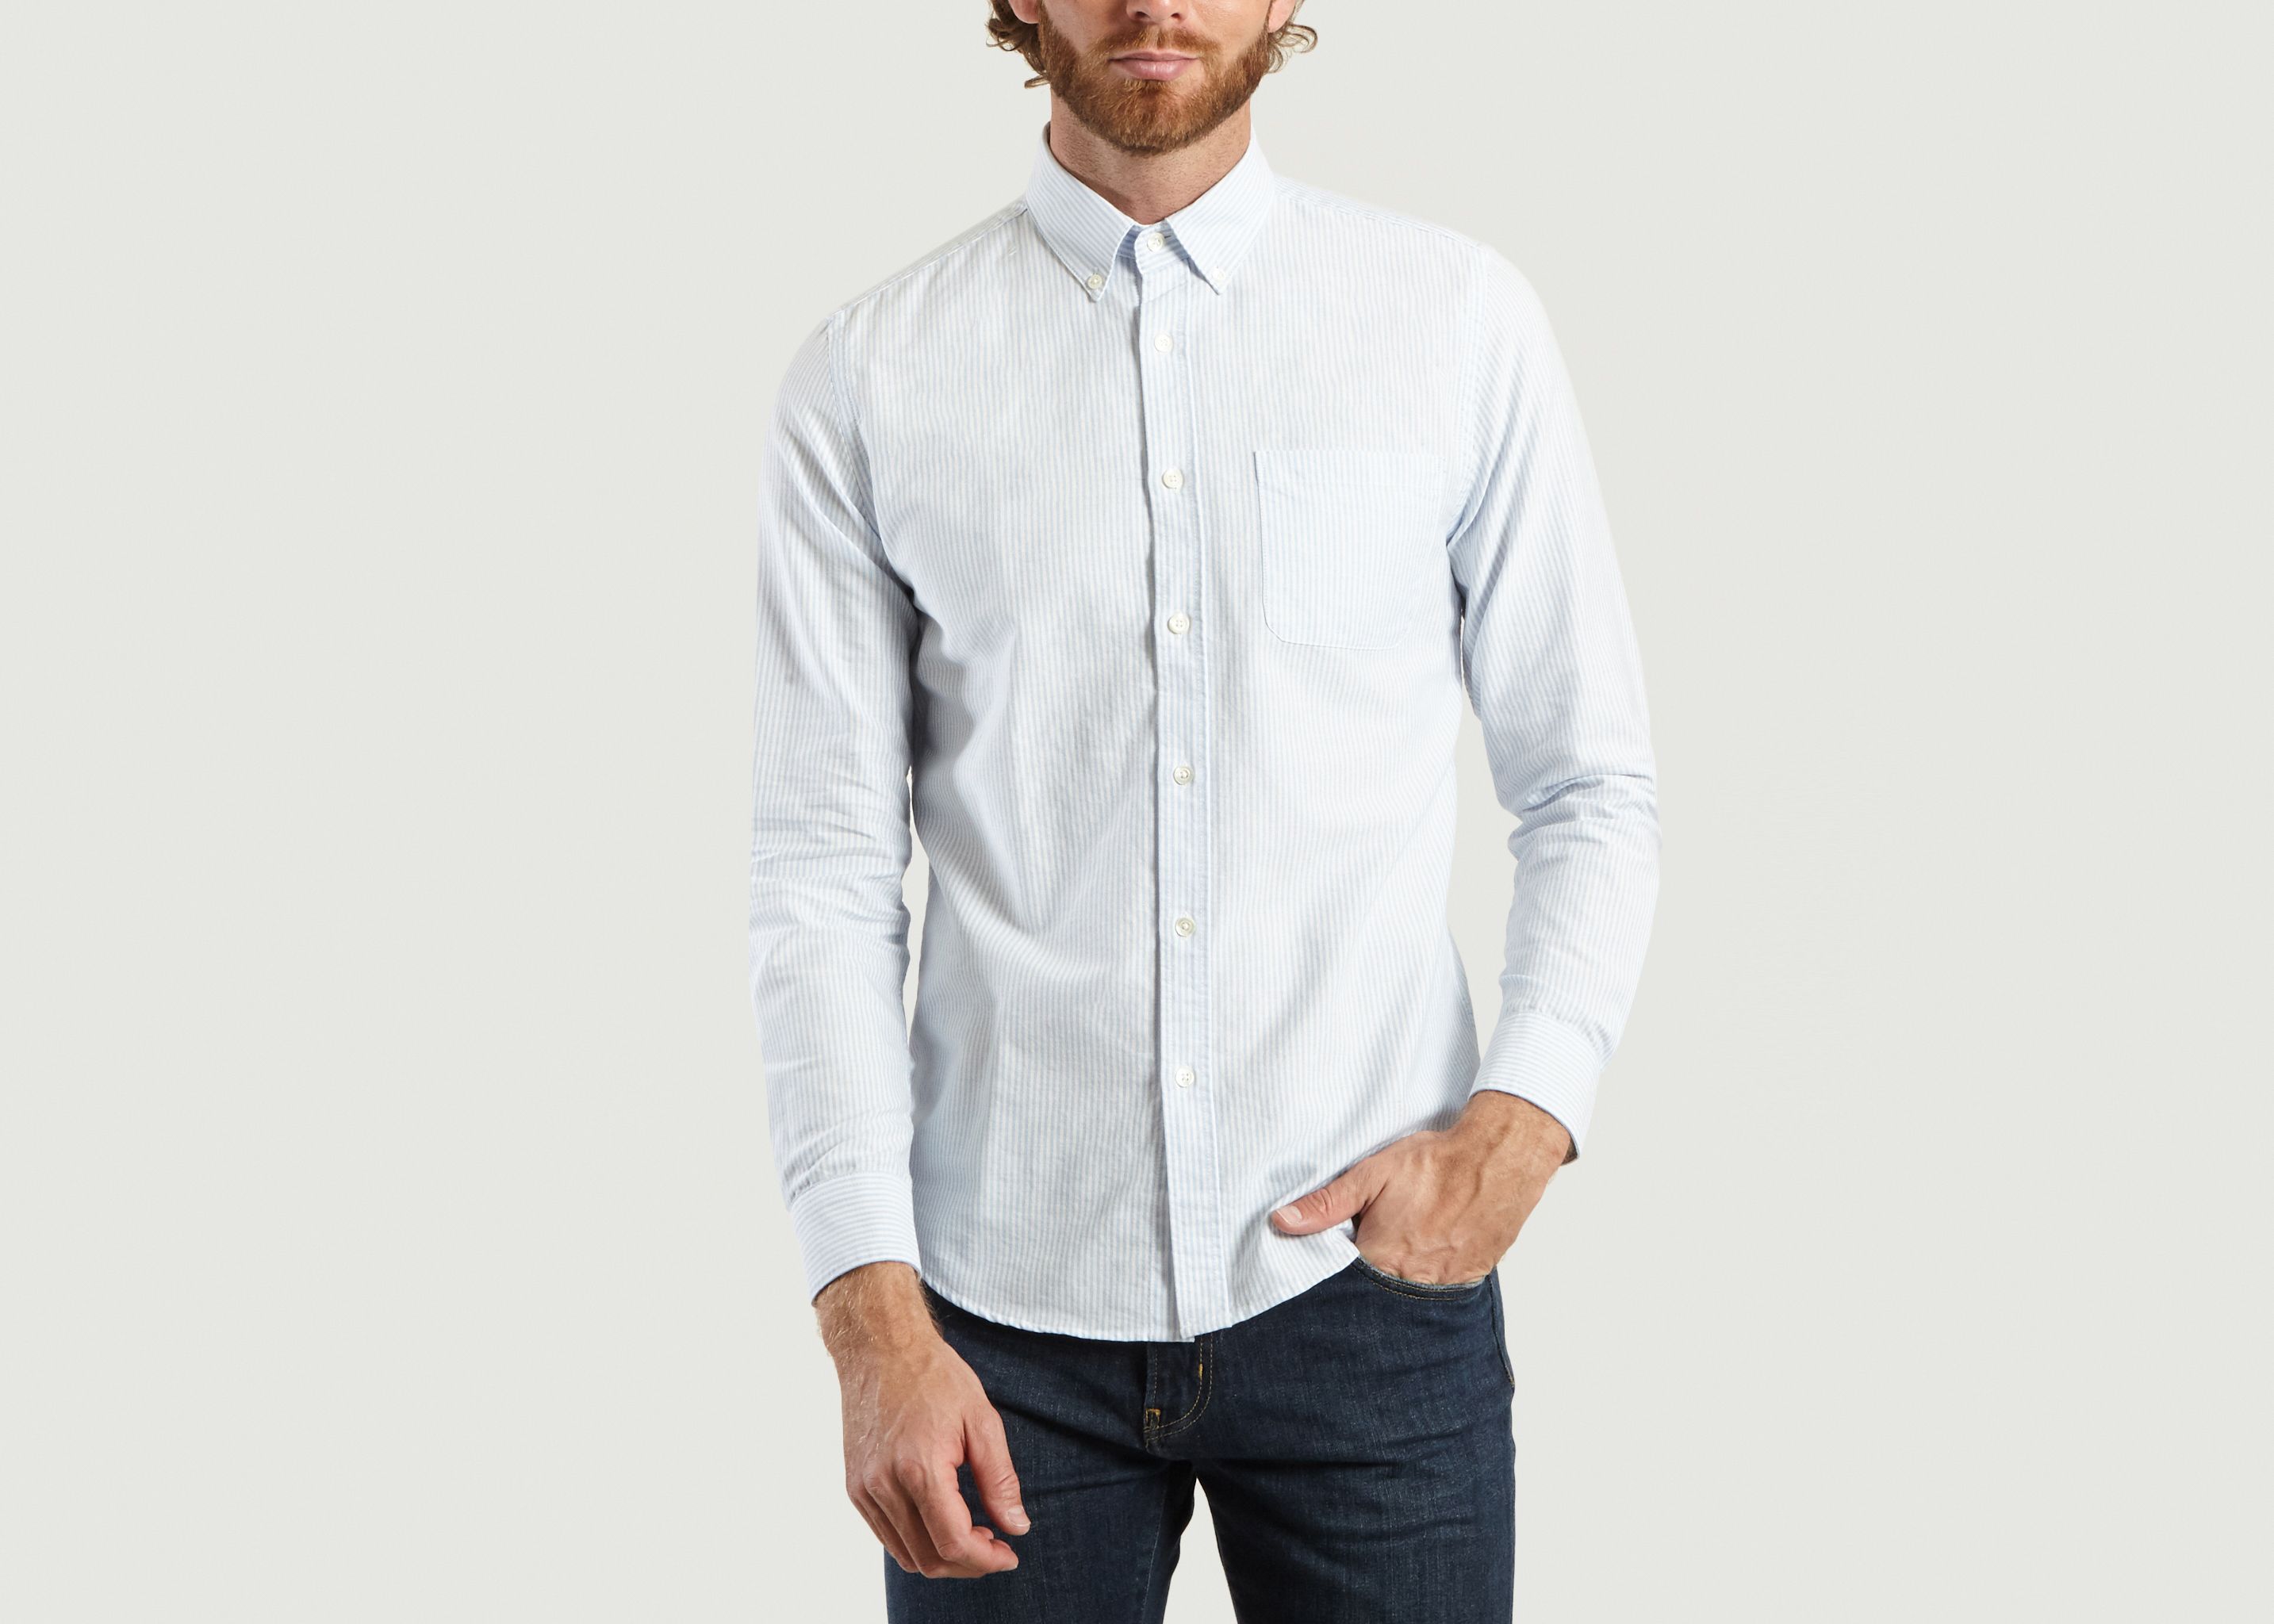 Bellaviste Striped Shirt - Portuguese Flannel